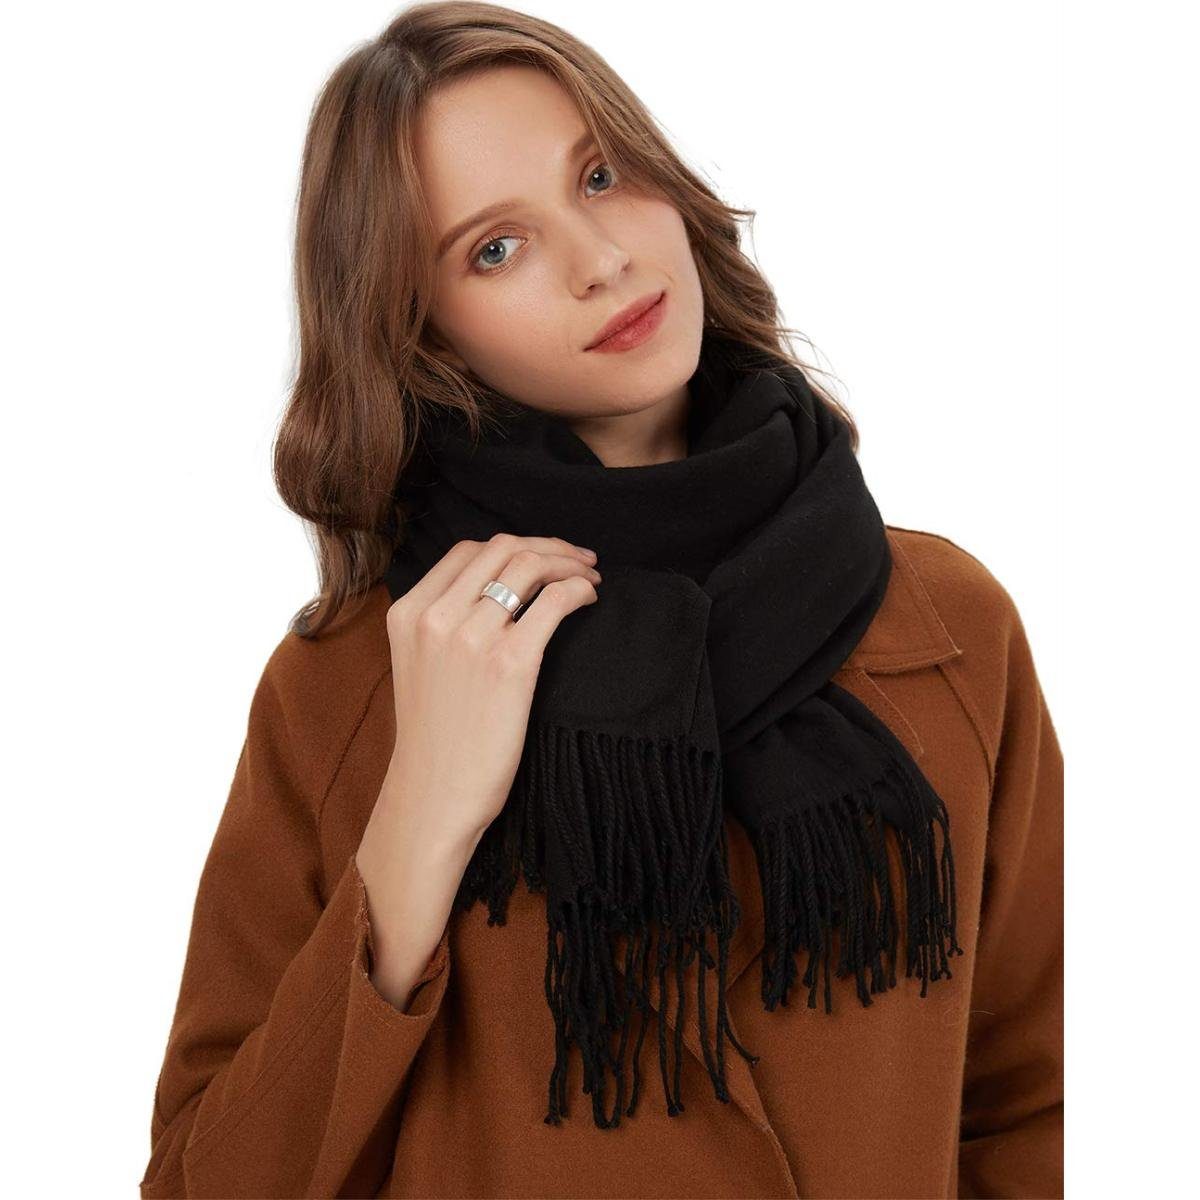 Jormftte Halstuch Schal Warm mit unifarben quasten,Einfarbig Schwarz Herbst Baumwolle Winter